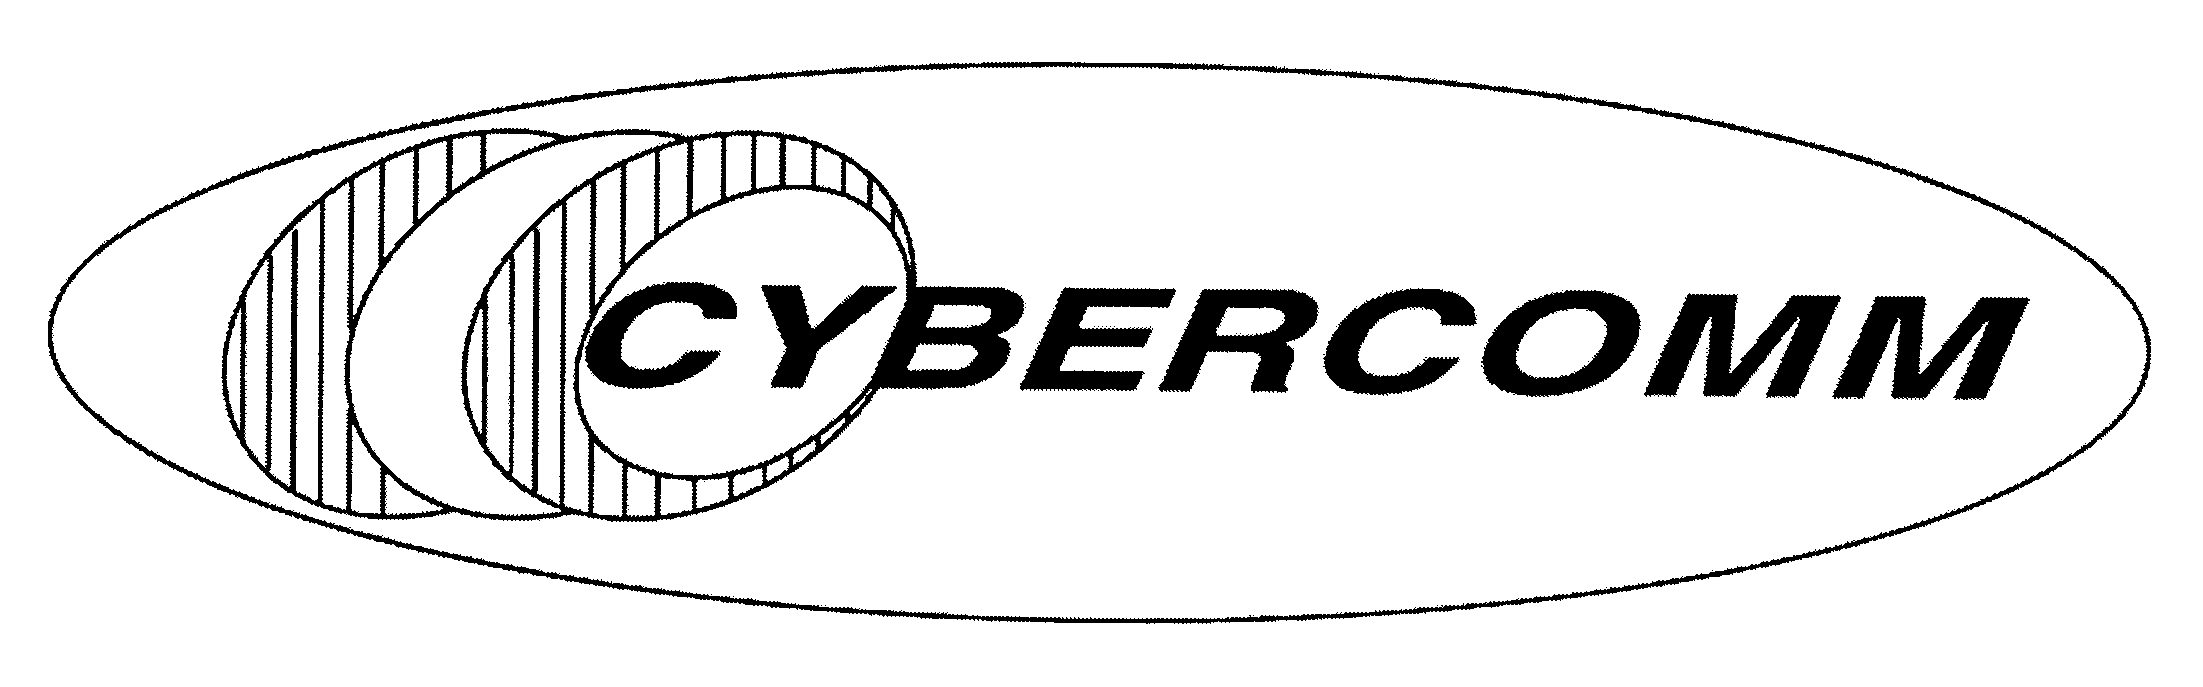 CYBERCOMM